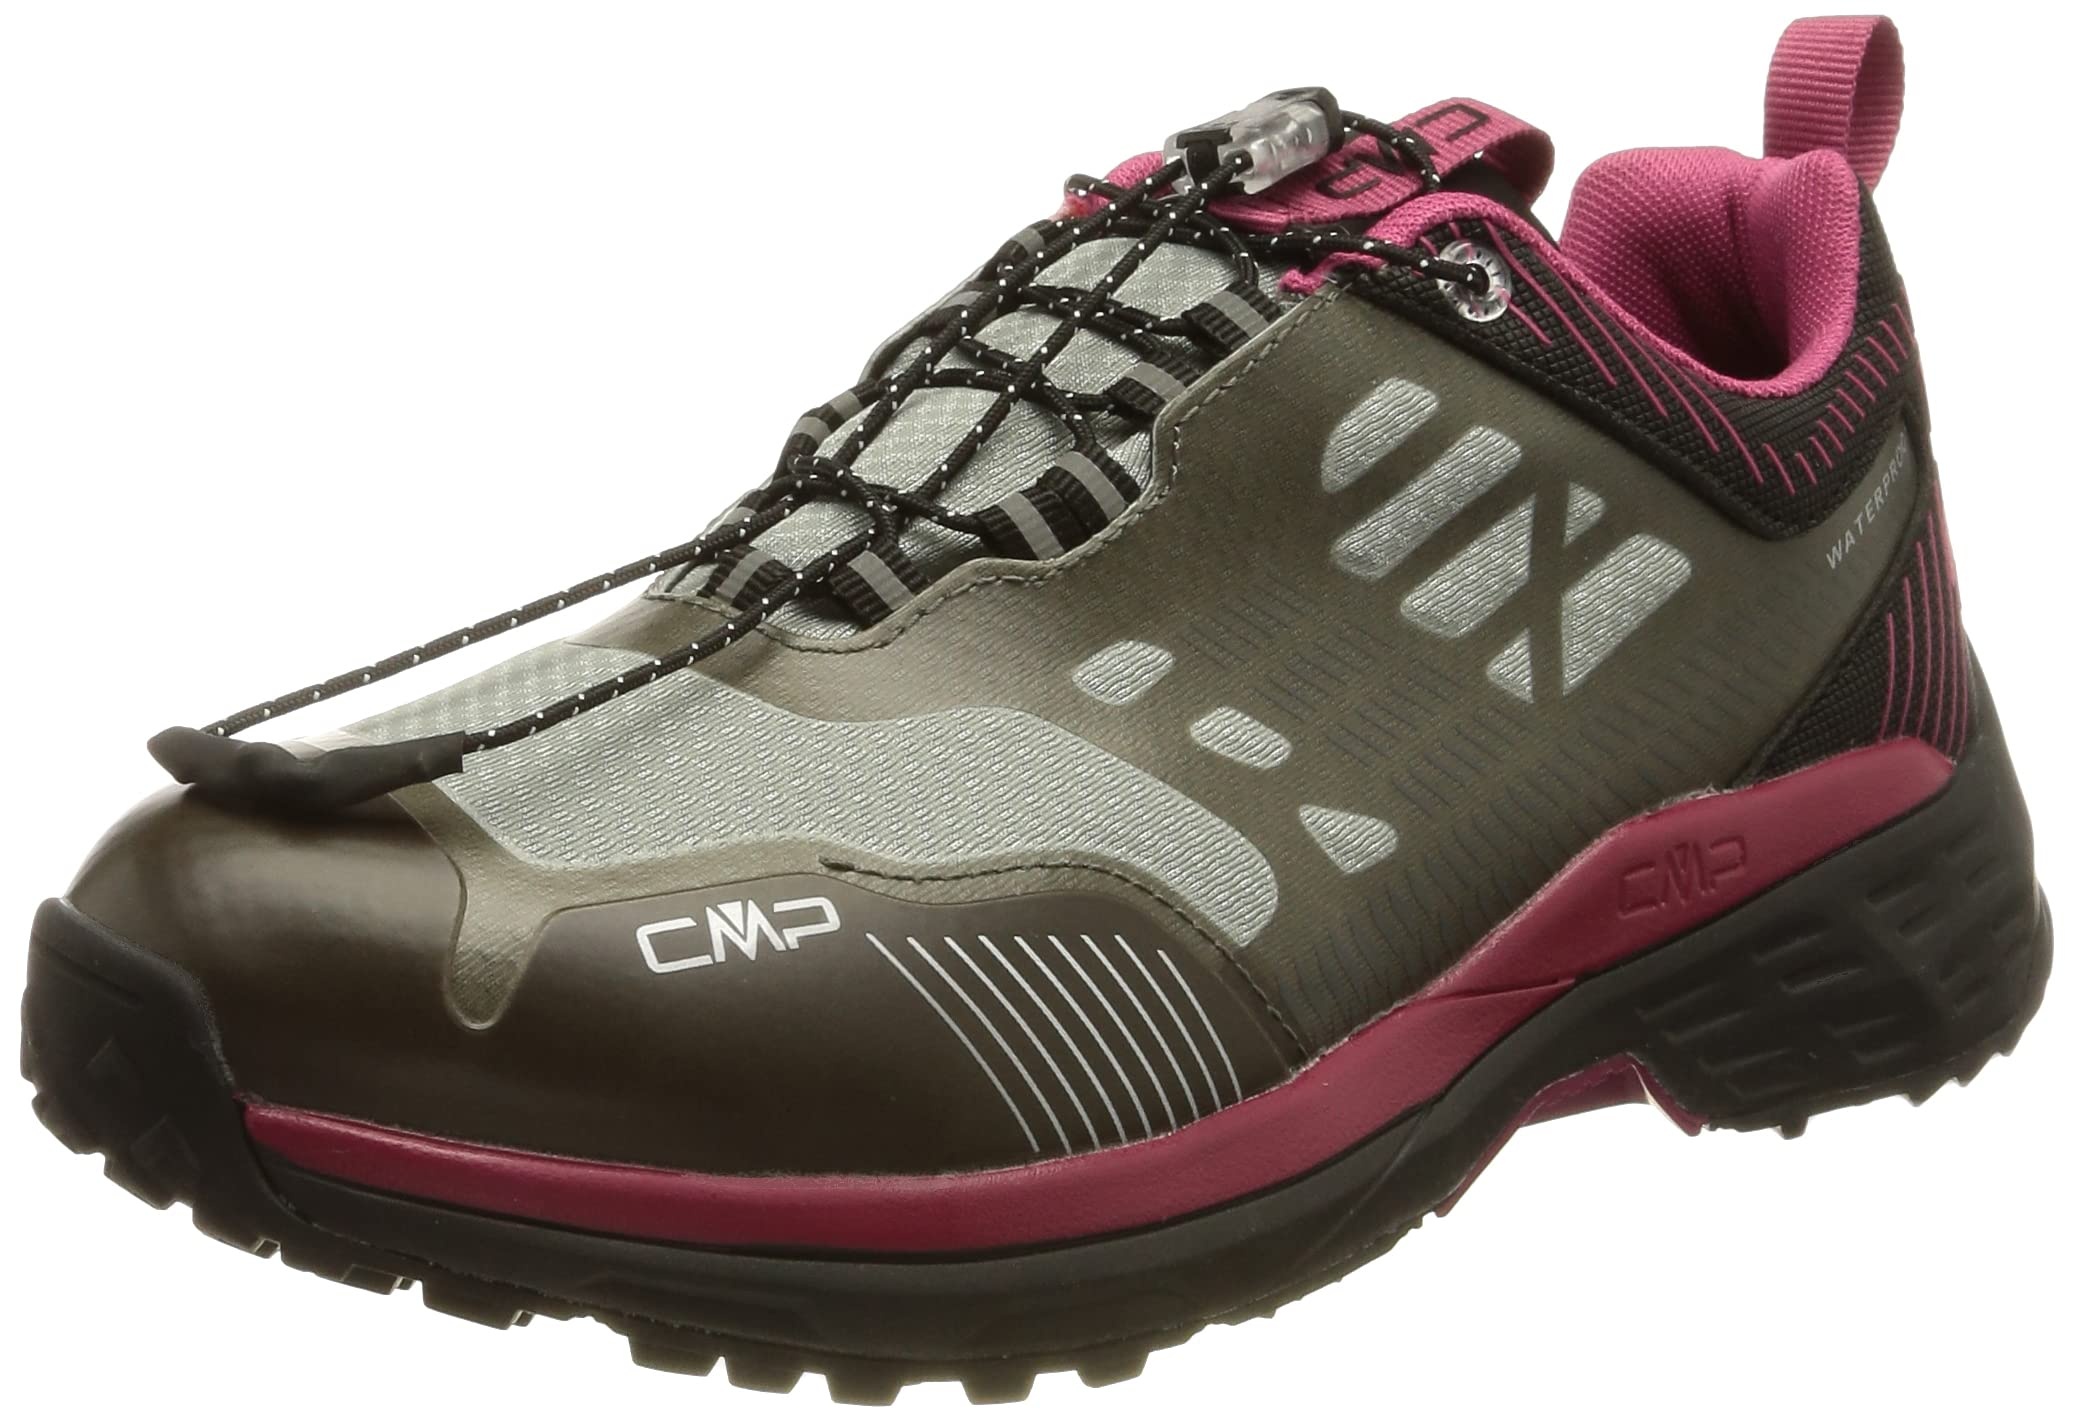 CMP Damen POHLARYS Low WMN WP Hiking Shoes Walking Shoe, Grey-Sangria, 39 EU